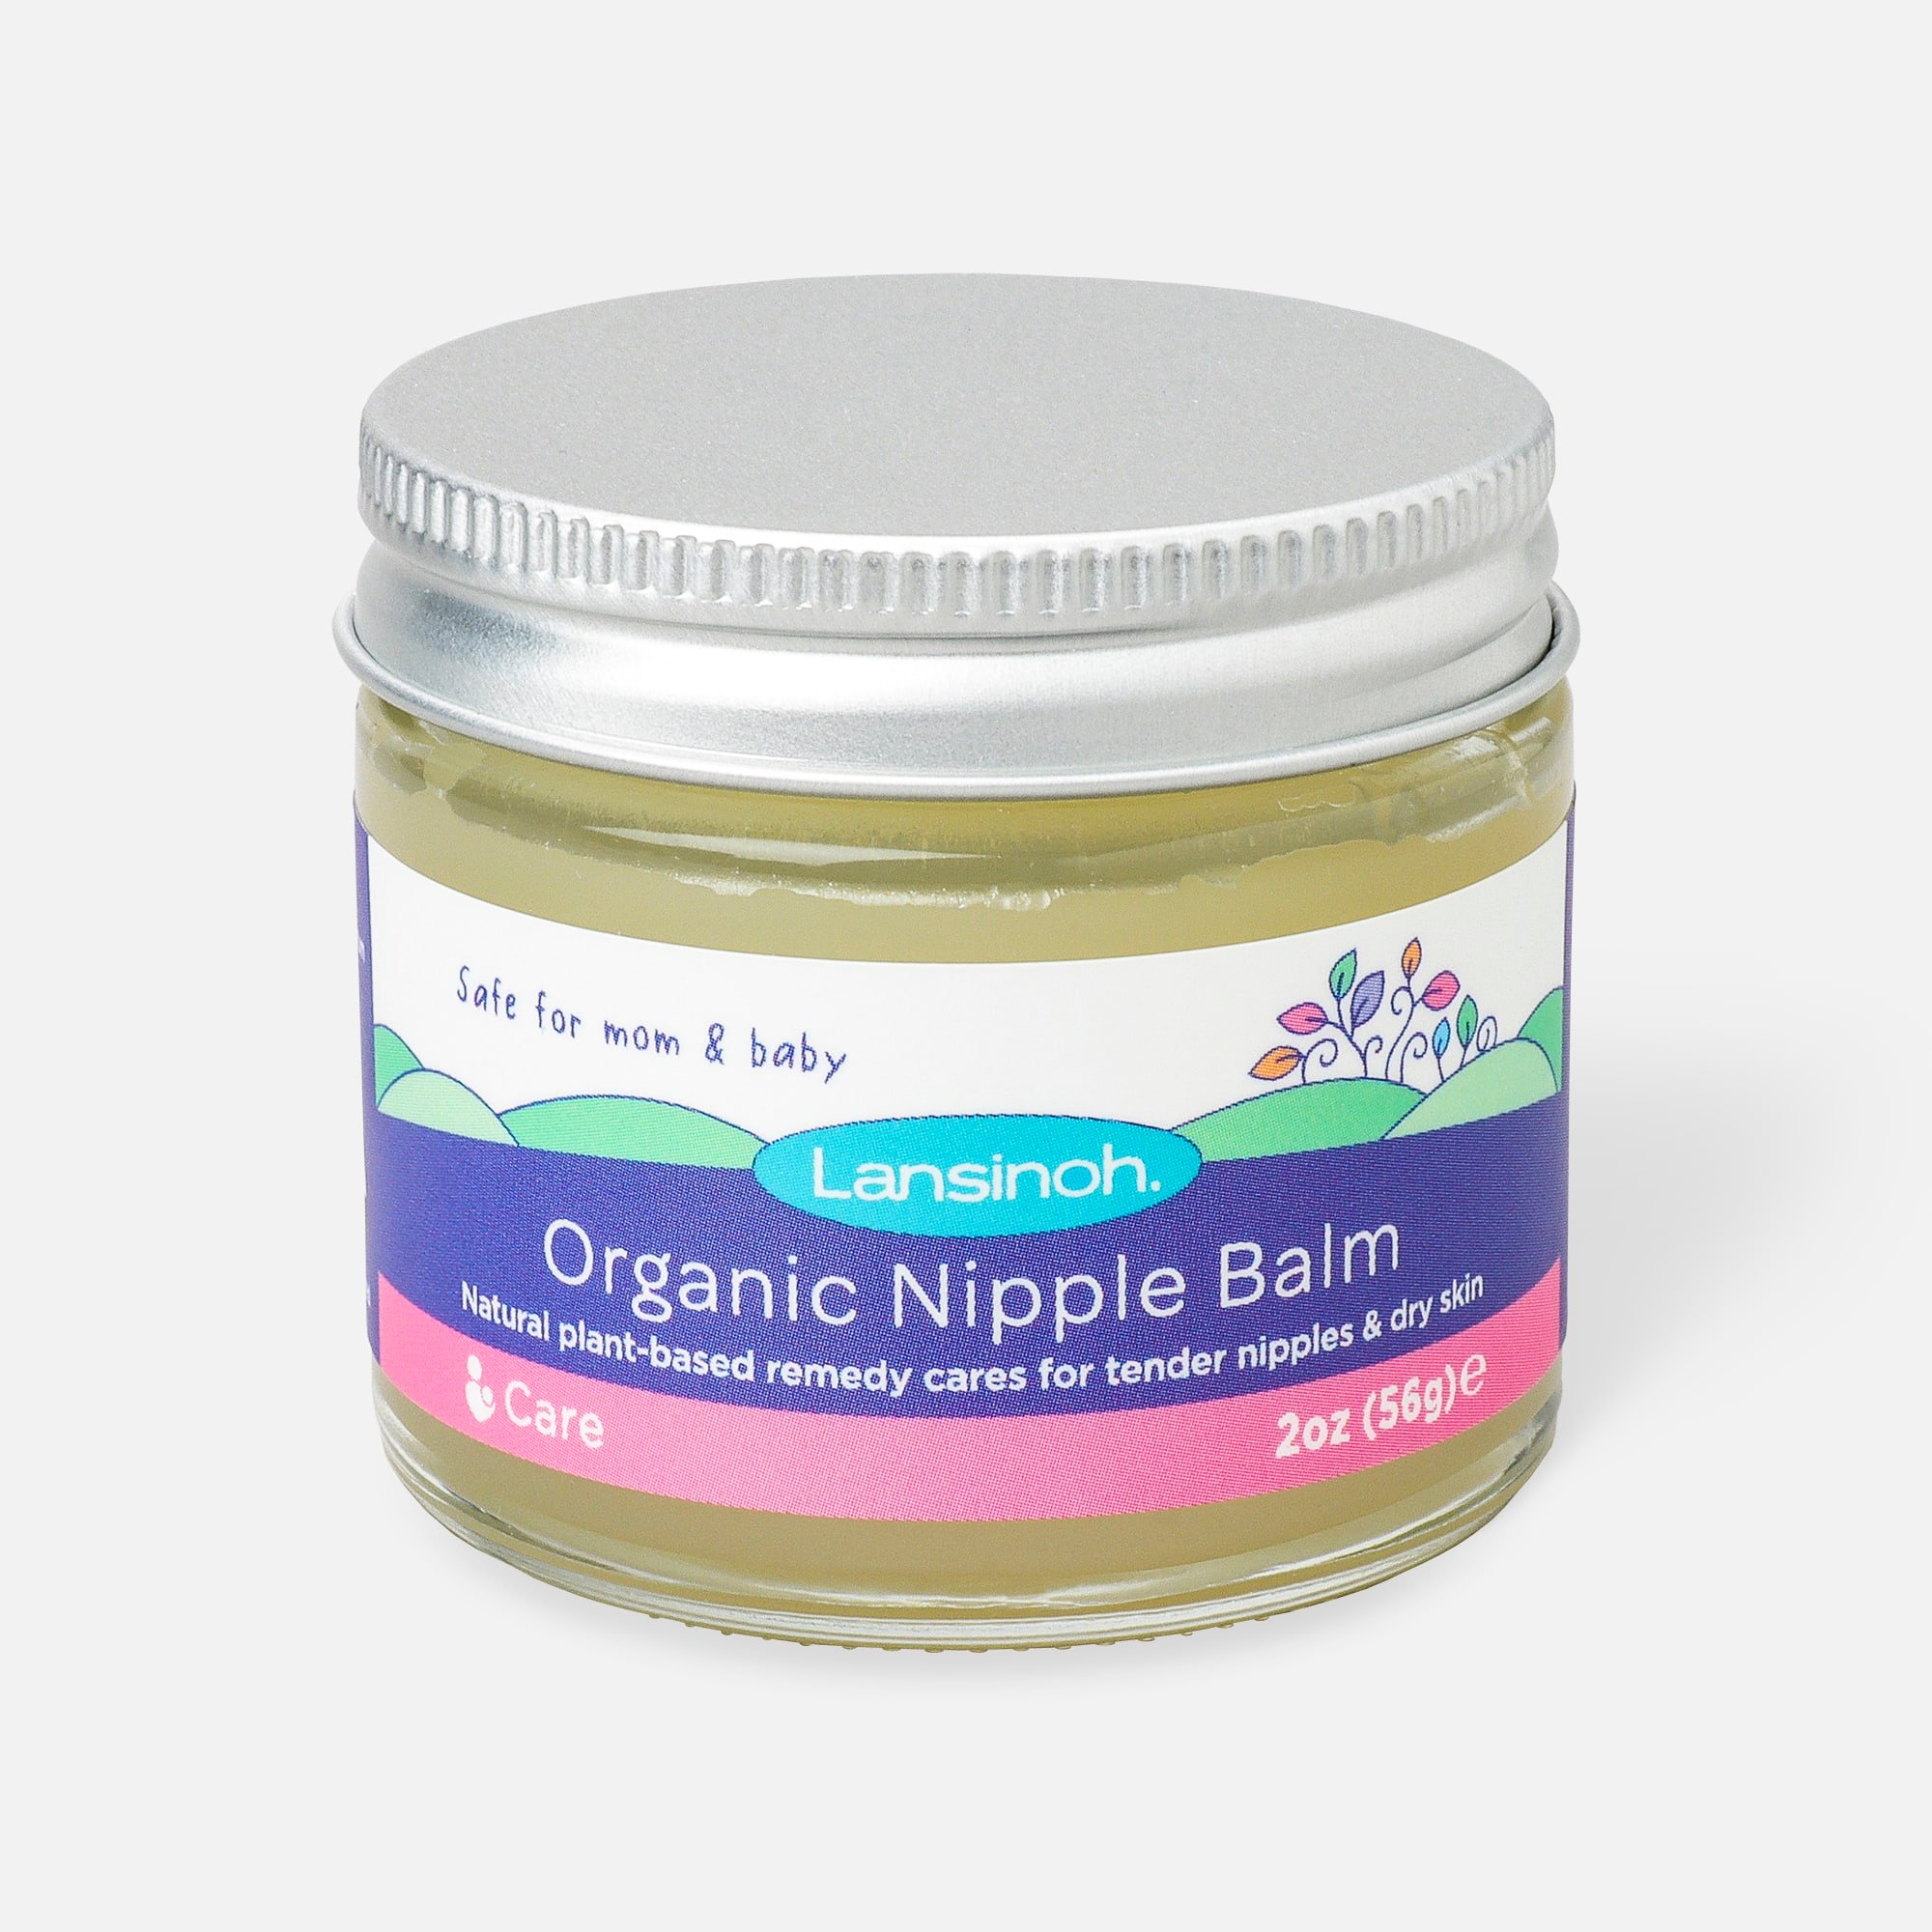 Lansinoh Organic Nipple Balm, 2 oz